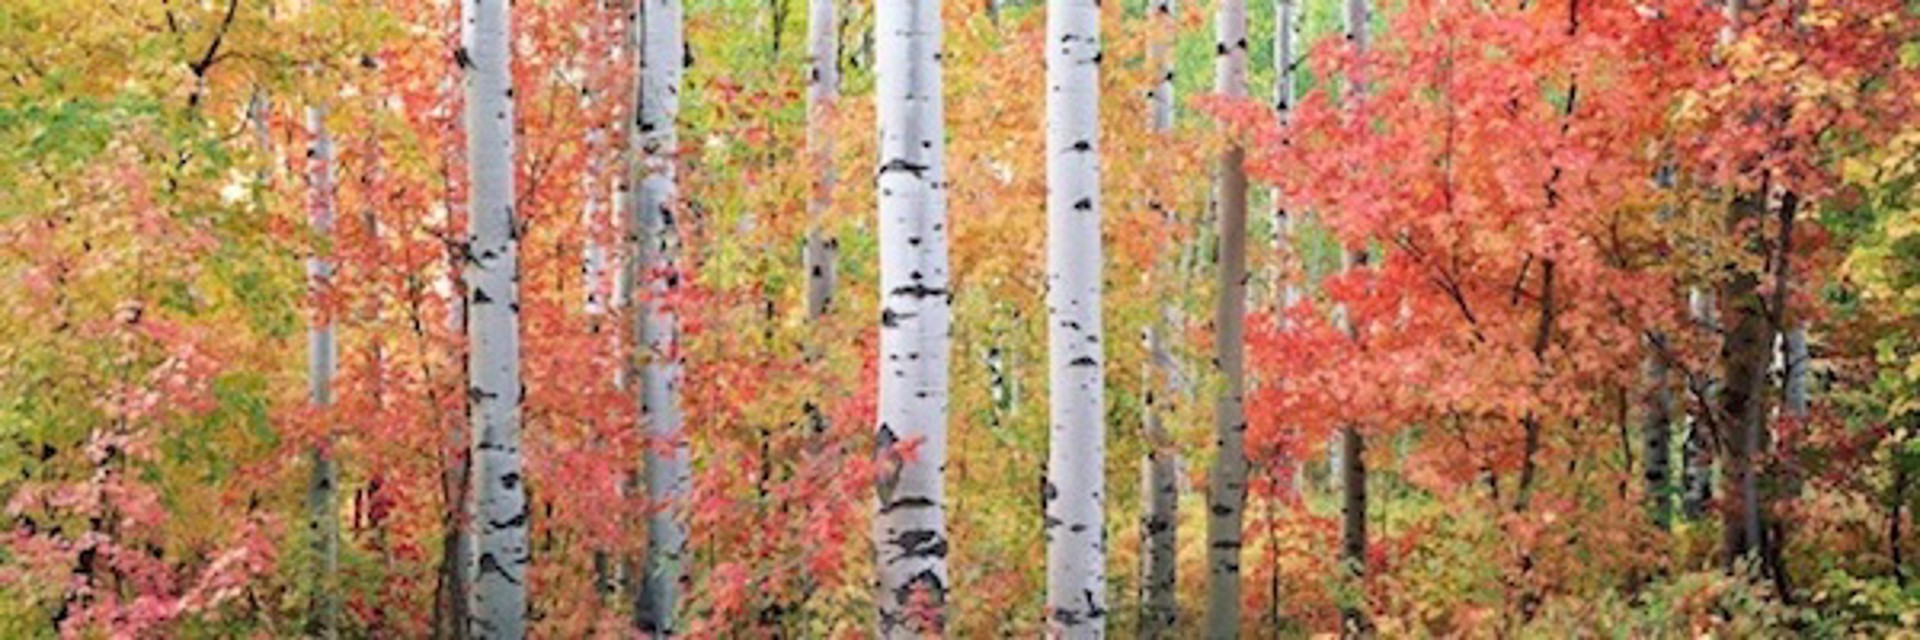 Autumn Forest Light by Steven Friedman